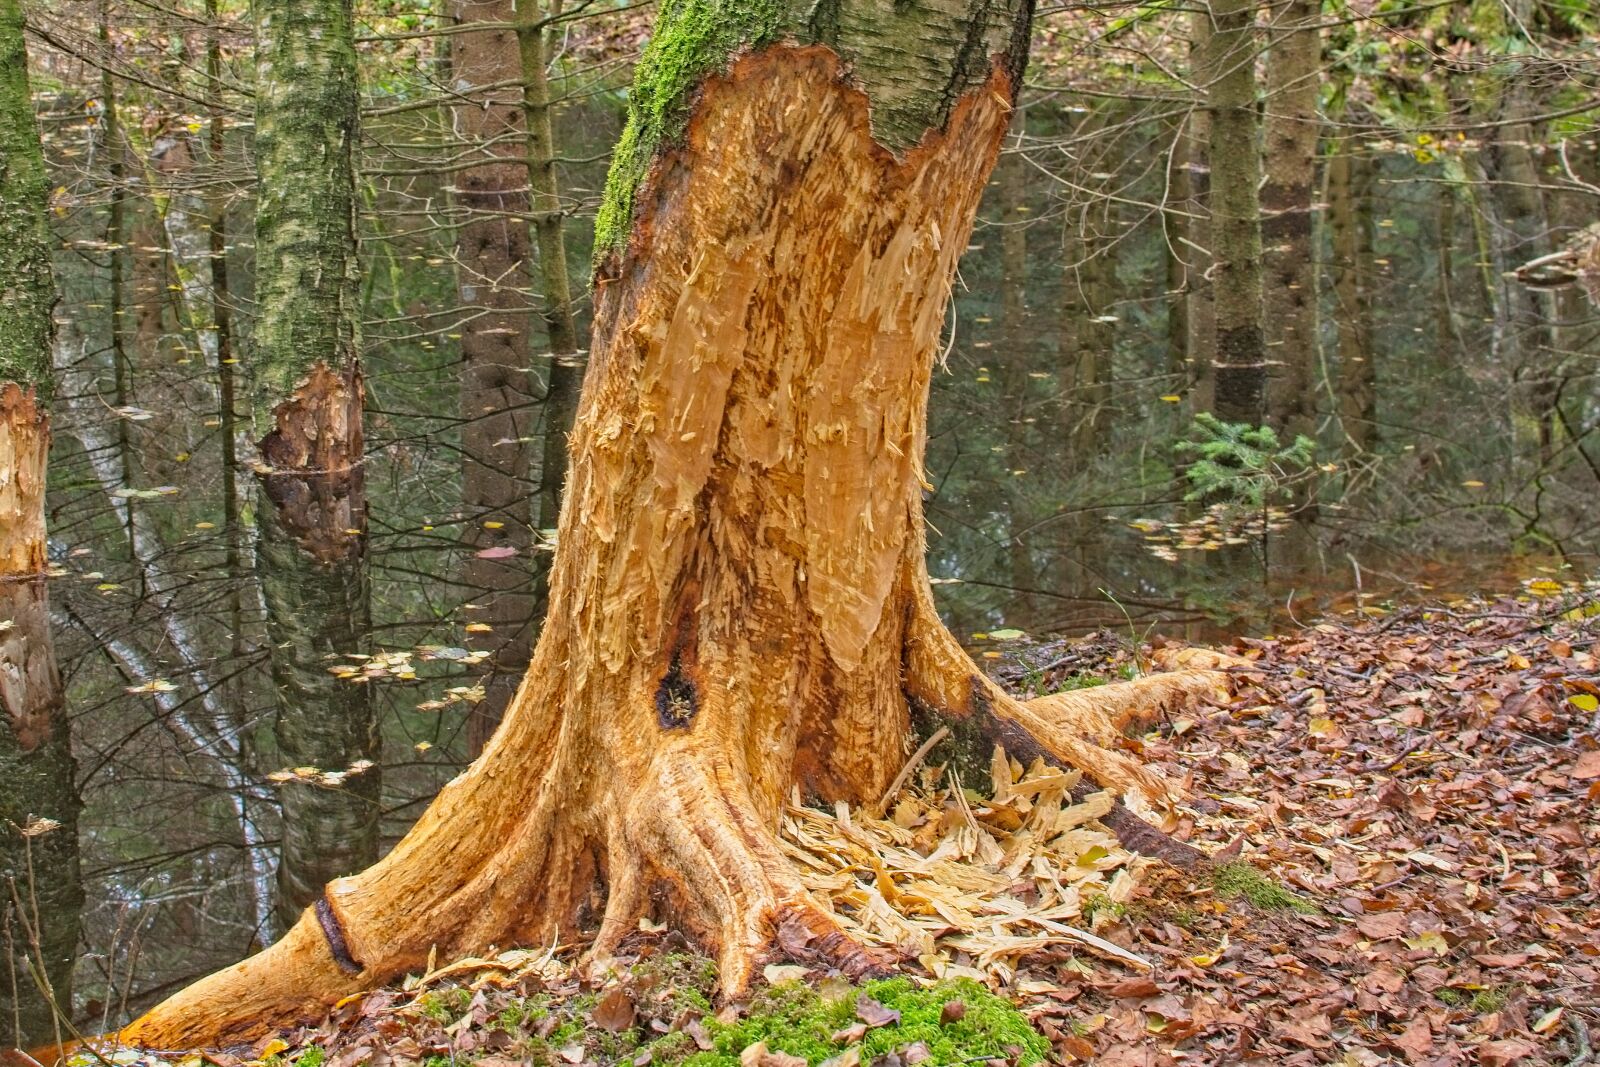 Nikon AF-S DX Nikkor 35mm F1.8G sample photo. Tree, log, beaver photography